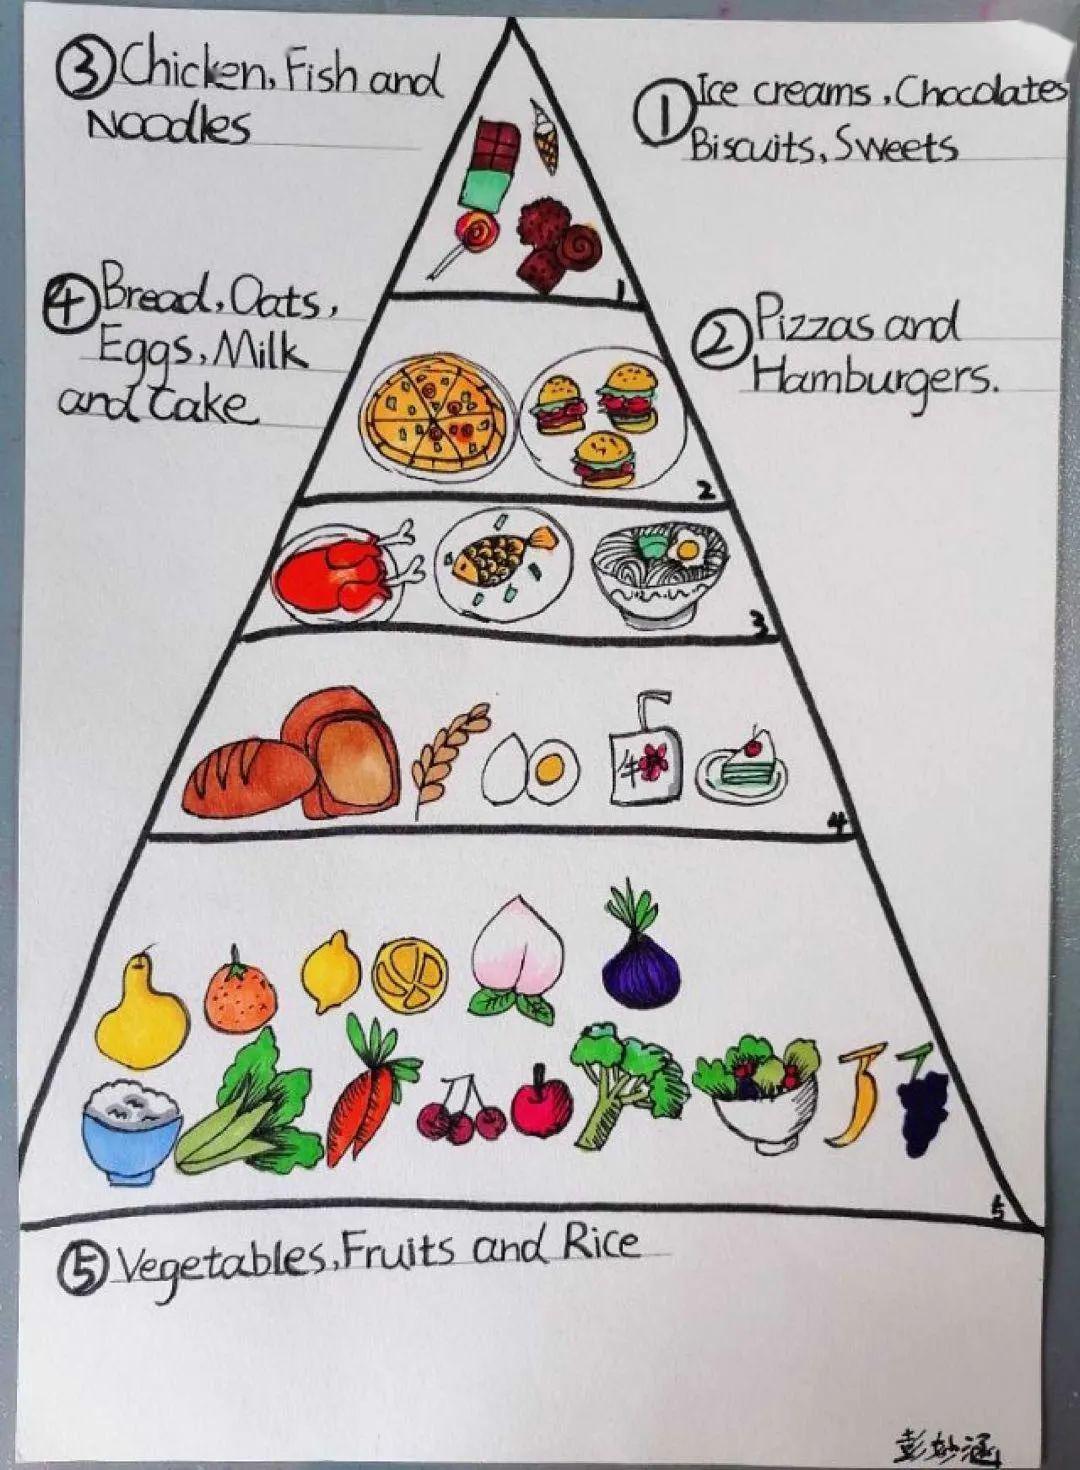 营养食物金字塔手抄报图片